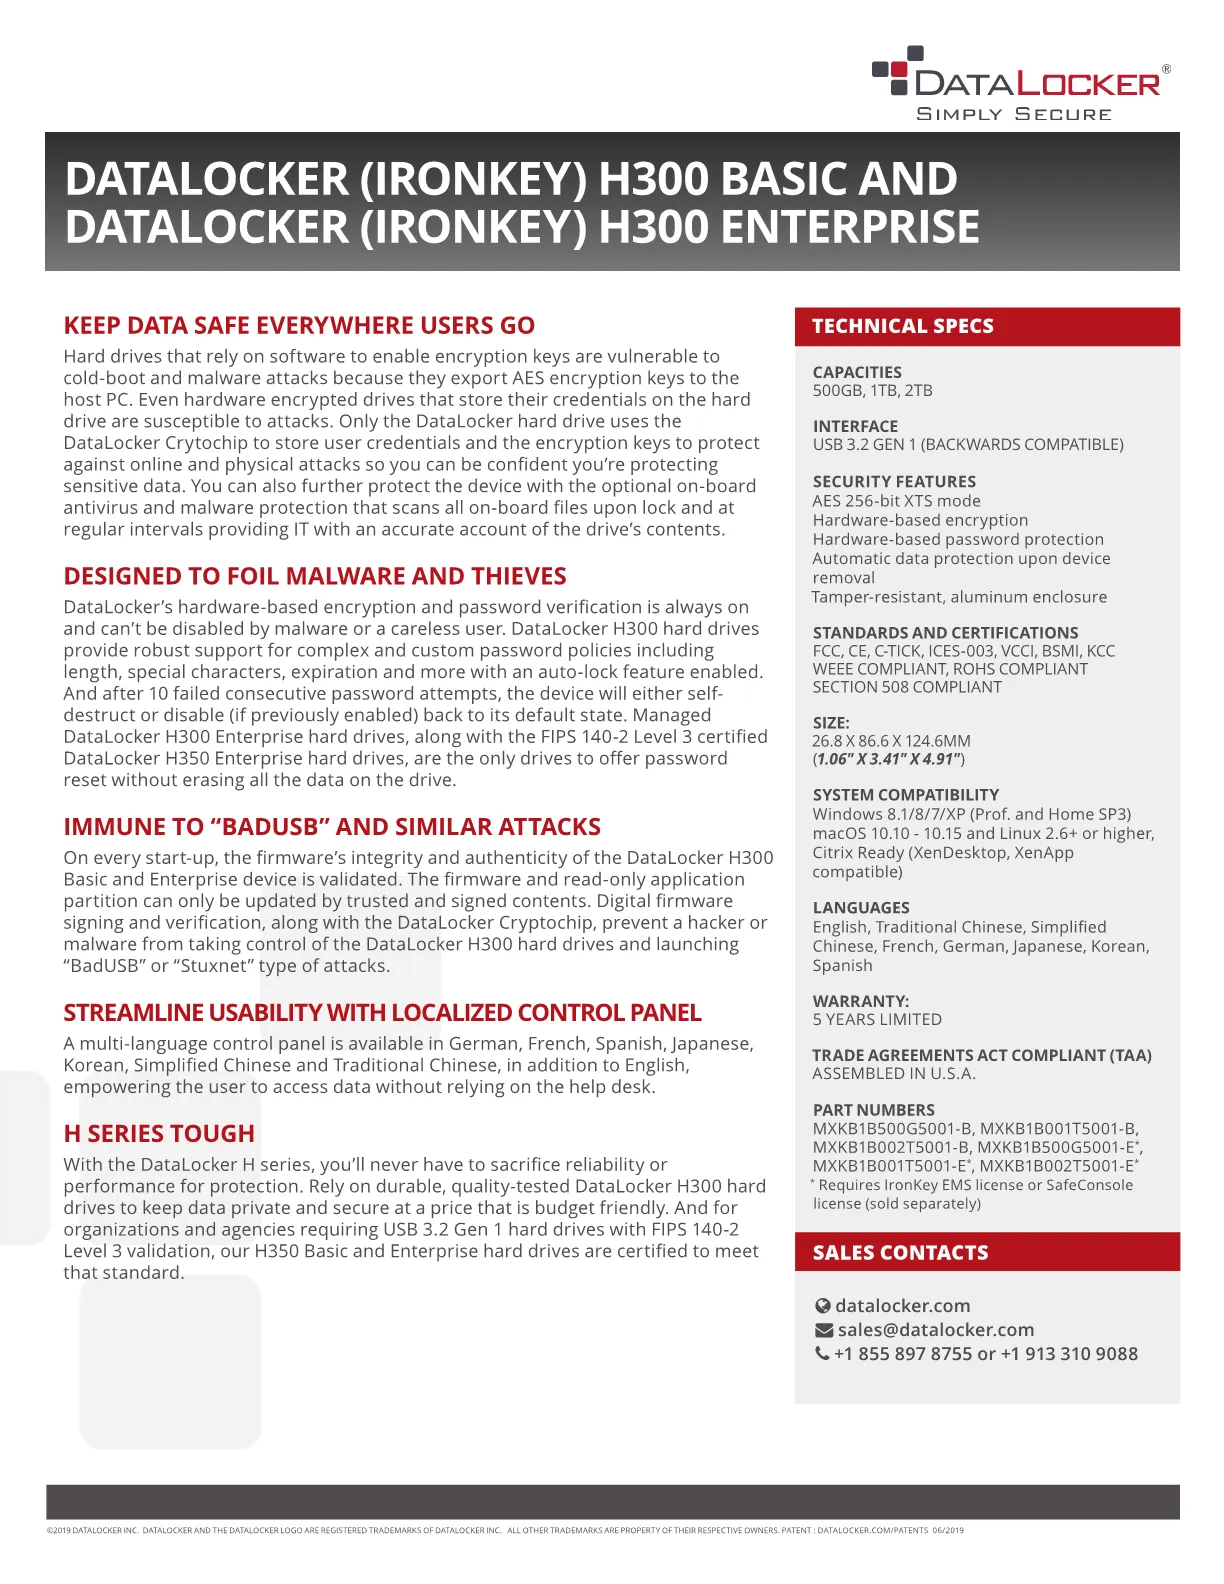 DataLocker (IronKey) H300 1TB Encrypted External Hard Drive - 5